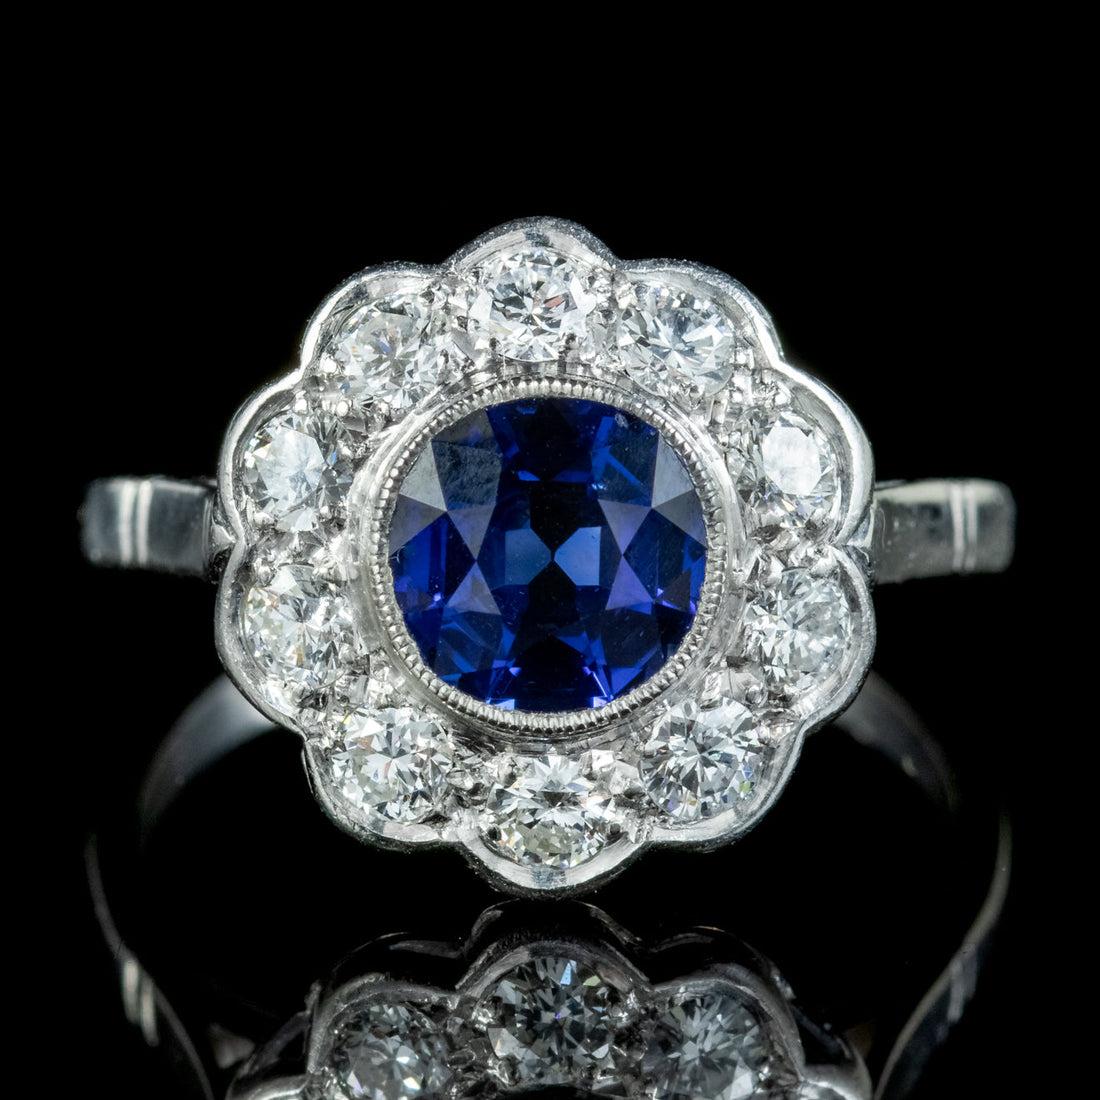 Cette magnifique bague ancienne de style édouardien datant du début du 20e siècle est ornée d'un saphir bleu profond serti au centre d'un halo de pétales de diamants étincelants de taille brillante.

Le saphir est d'environ 1,25ct et est